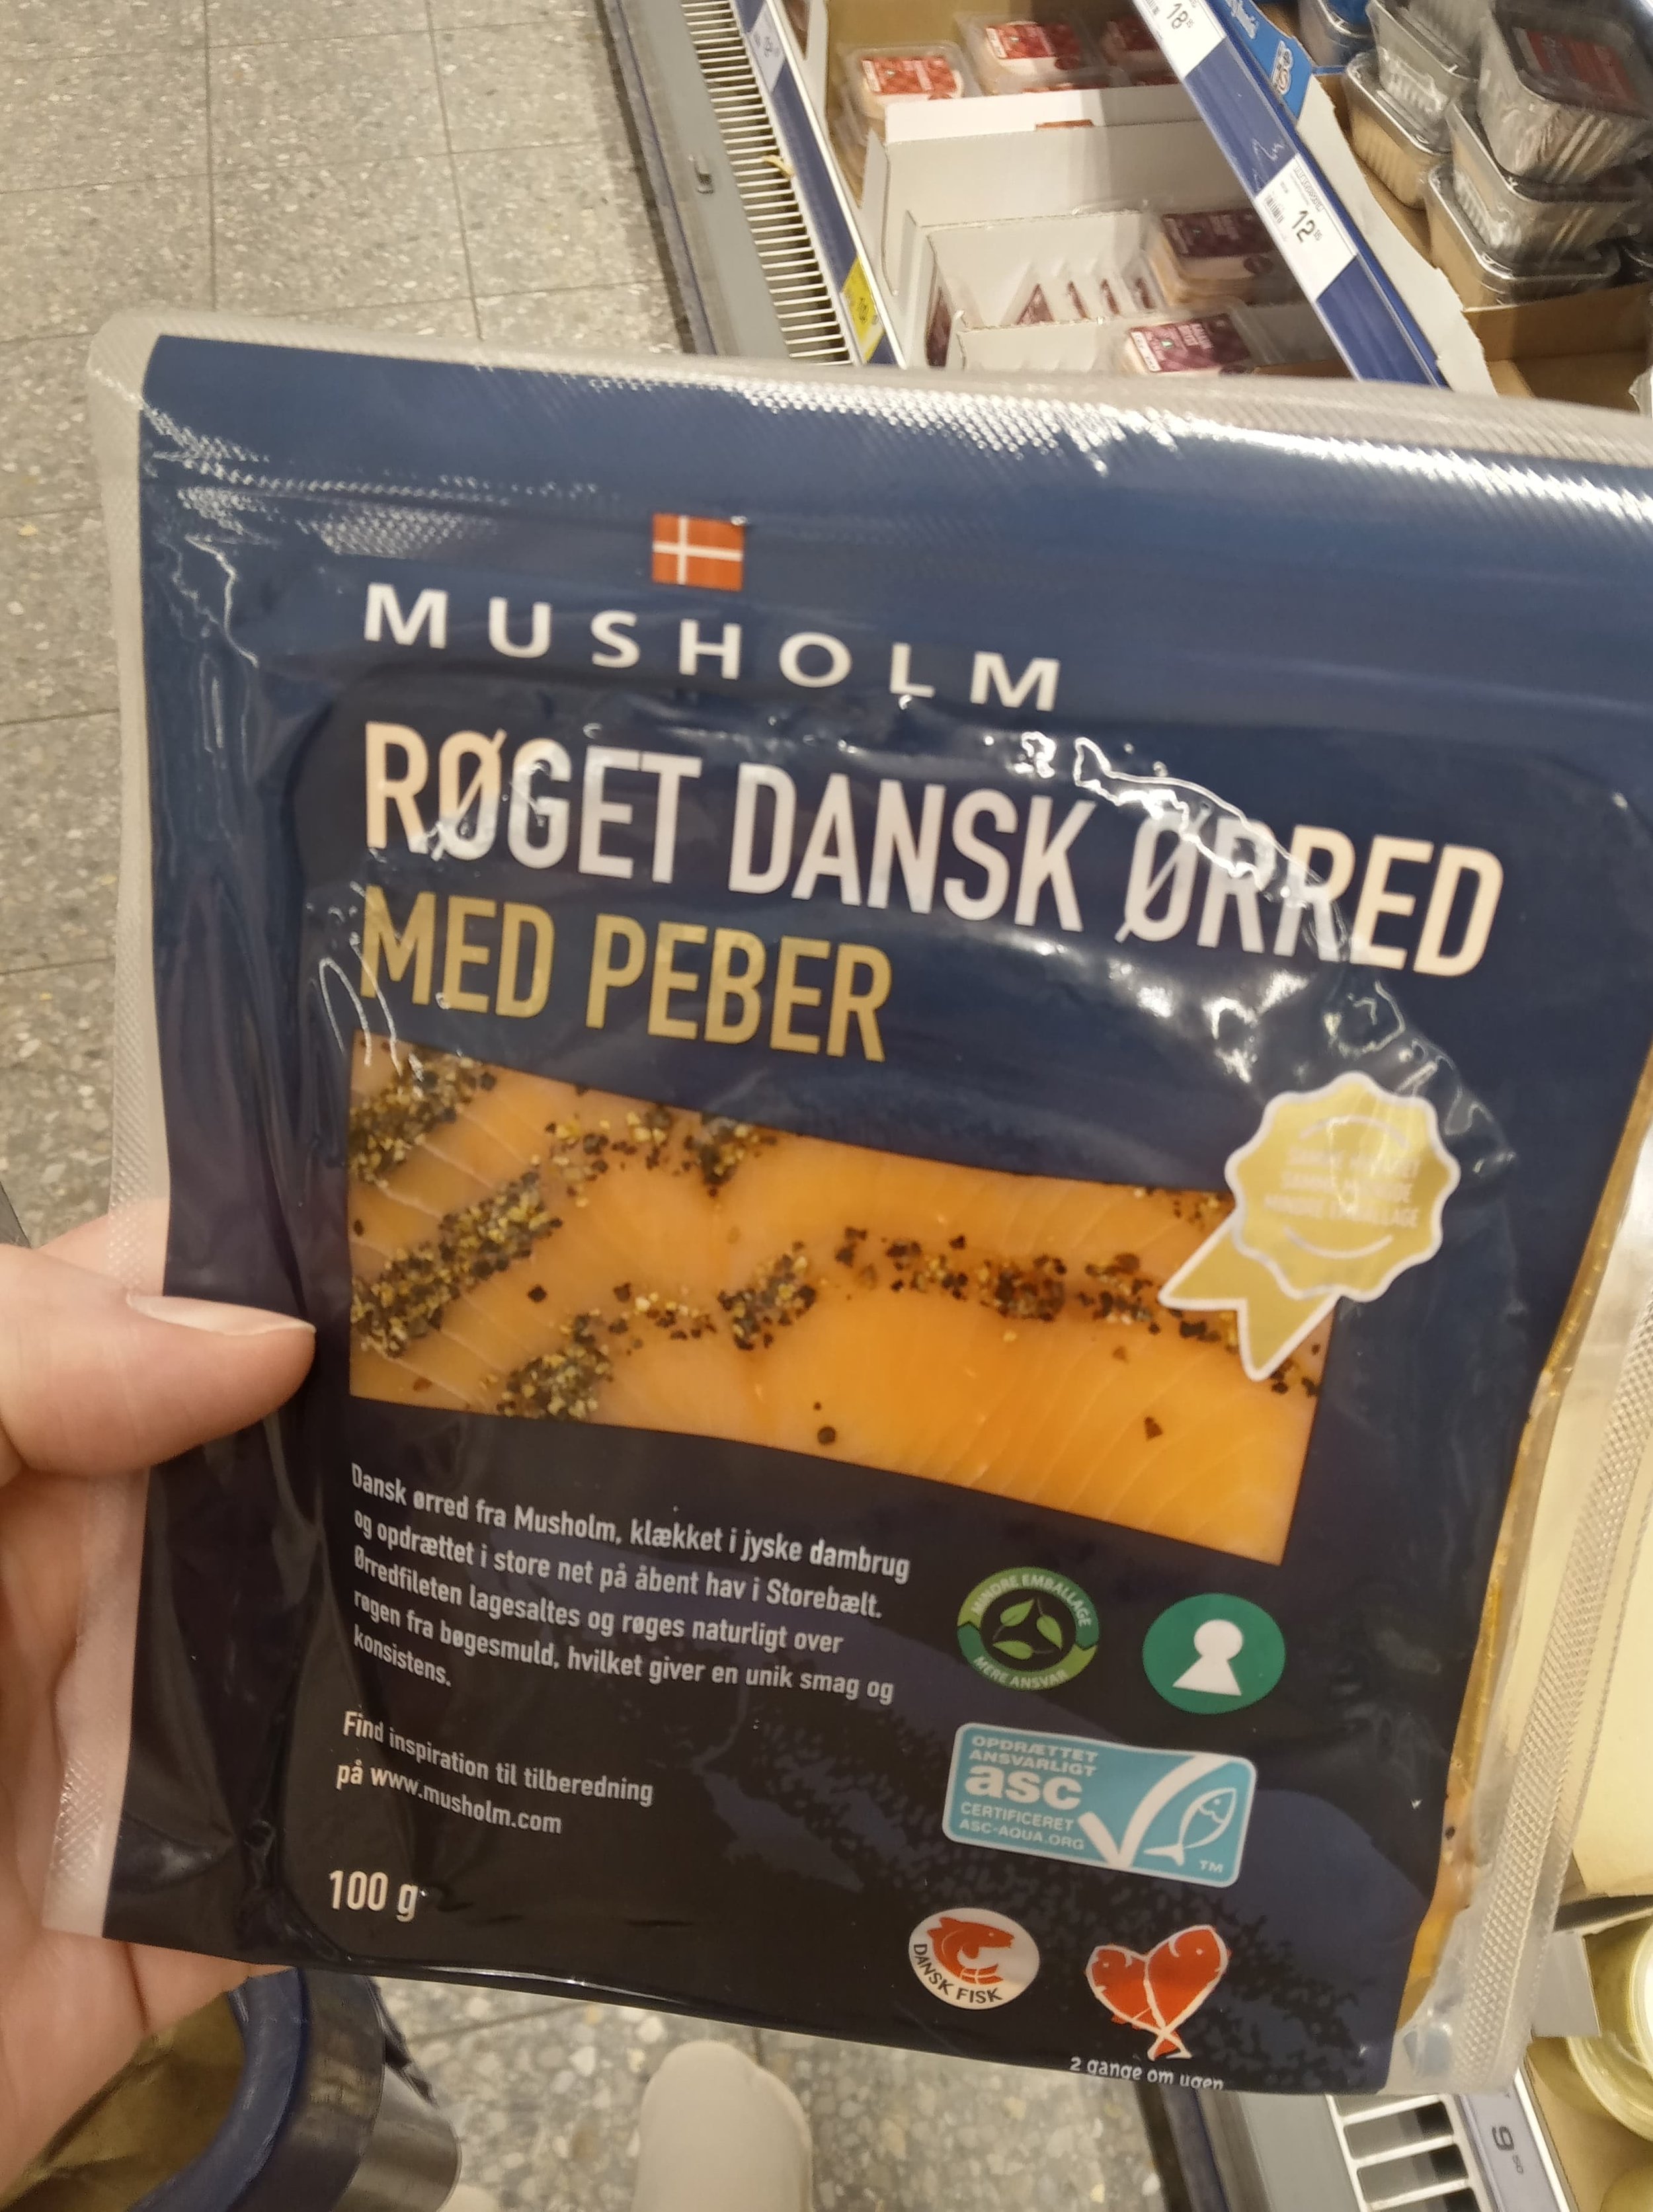 Musholm Røget dansk ørred med peber